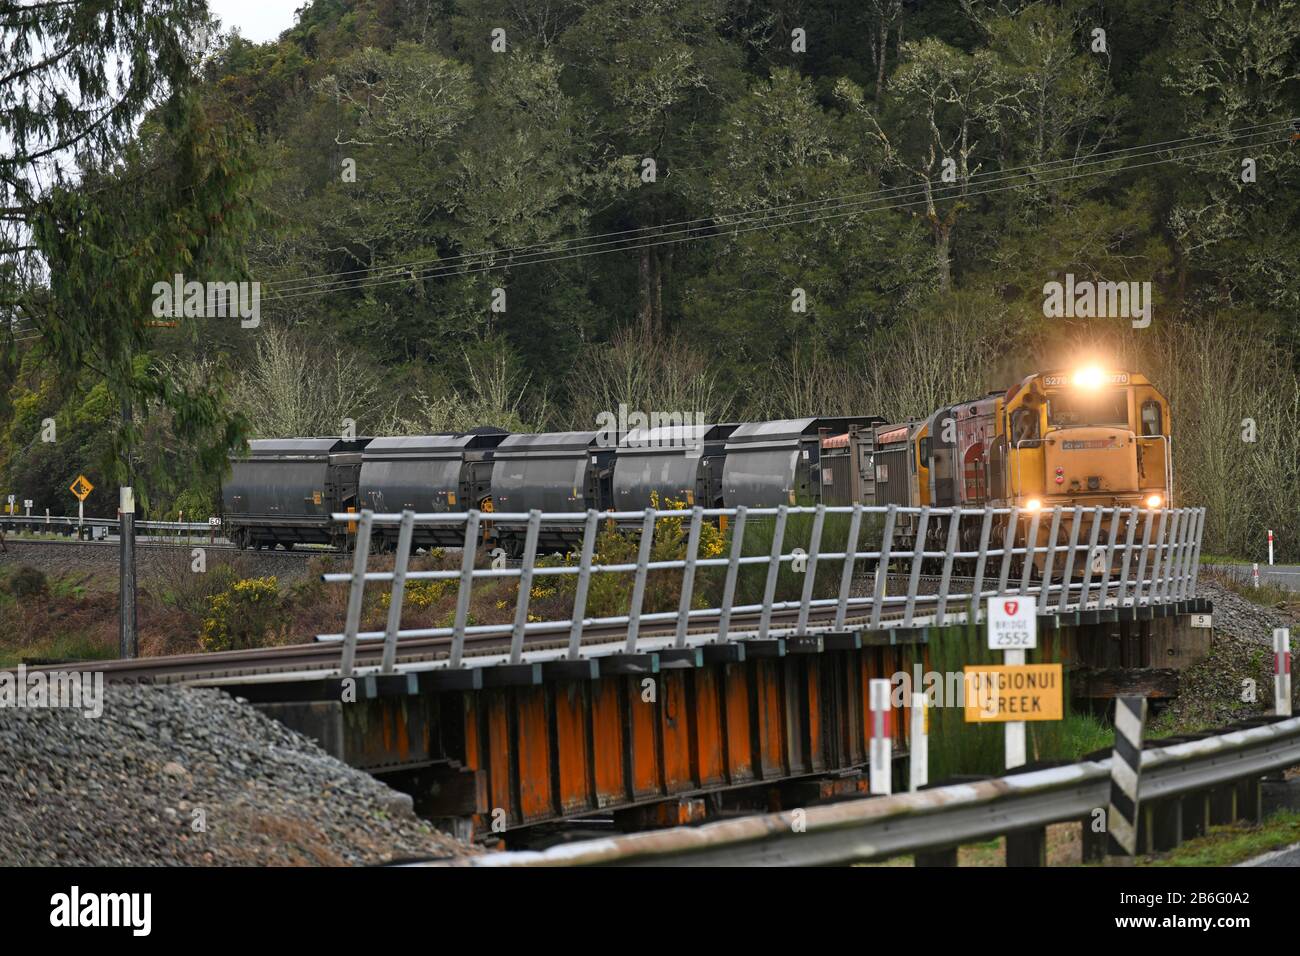 NGAHERE, NOUVELLE-ZÉLANDE, 2 SEPTEMBRE 2019: Un petit train à charbon tourne le coin pour traverser le pont à Ongionui Creek près de Ngahere sur la côte ouest Banque D'Images